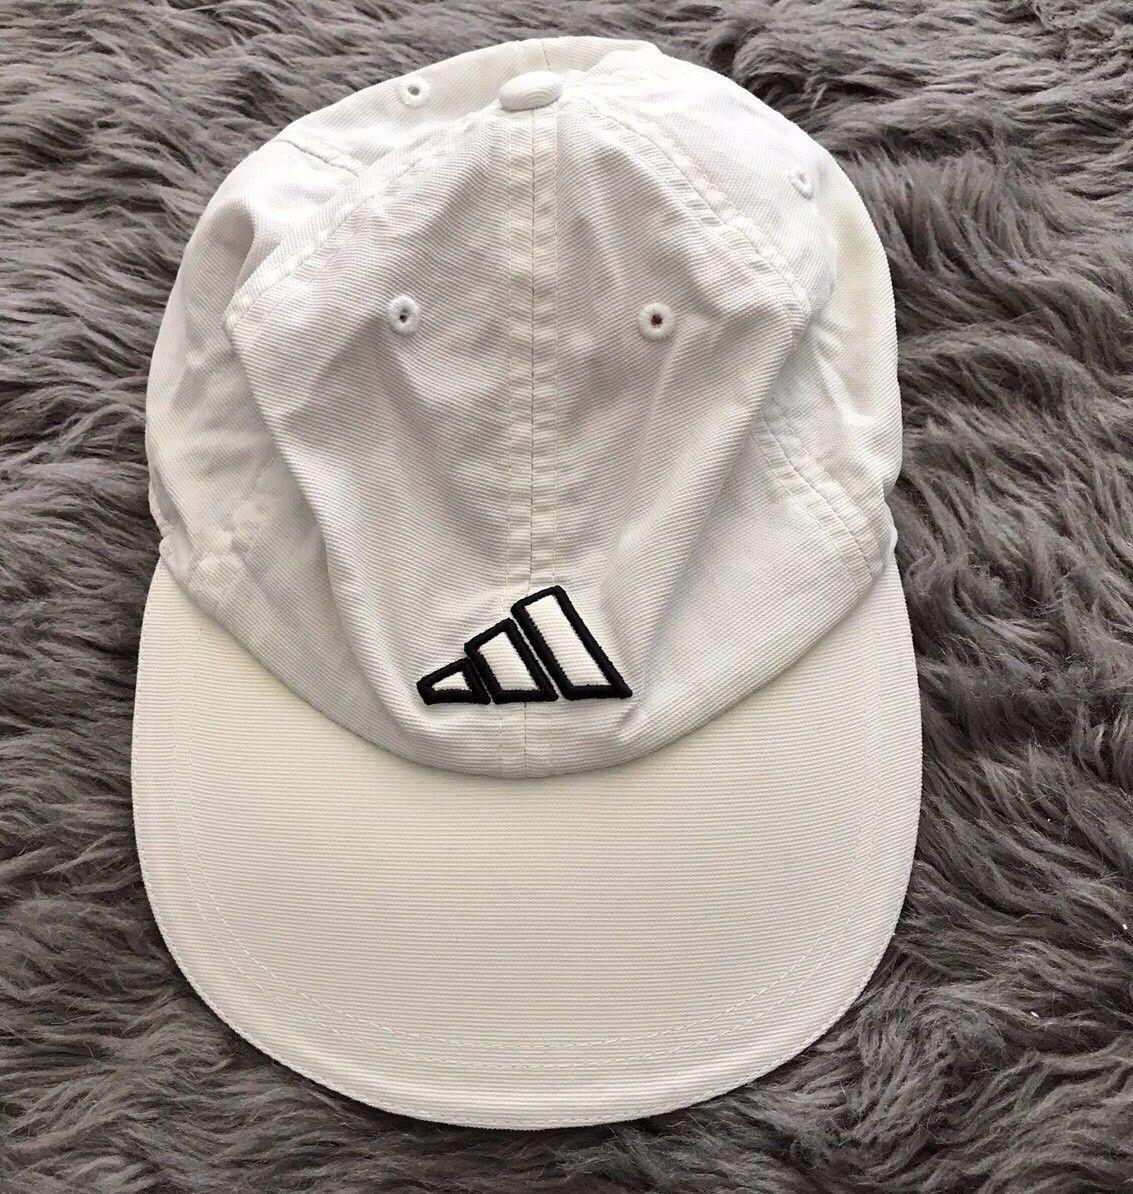 White with Three Stripes Logo - Vintage Adidas Adidas Vintage White Hat Three Stripes 6a3705 ...